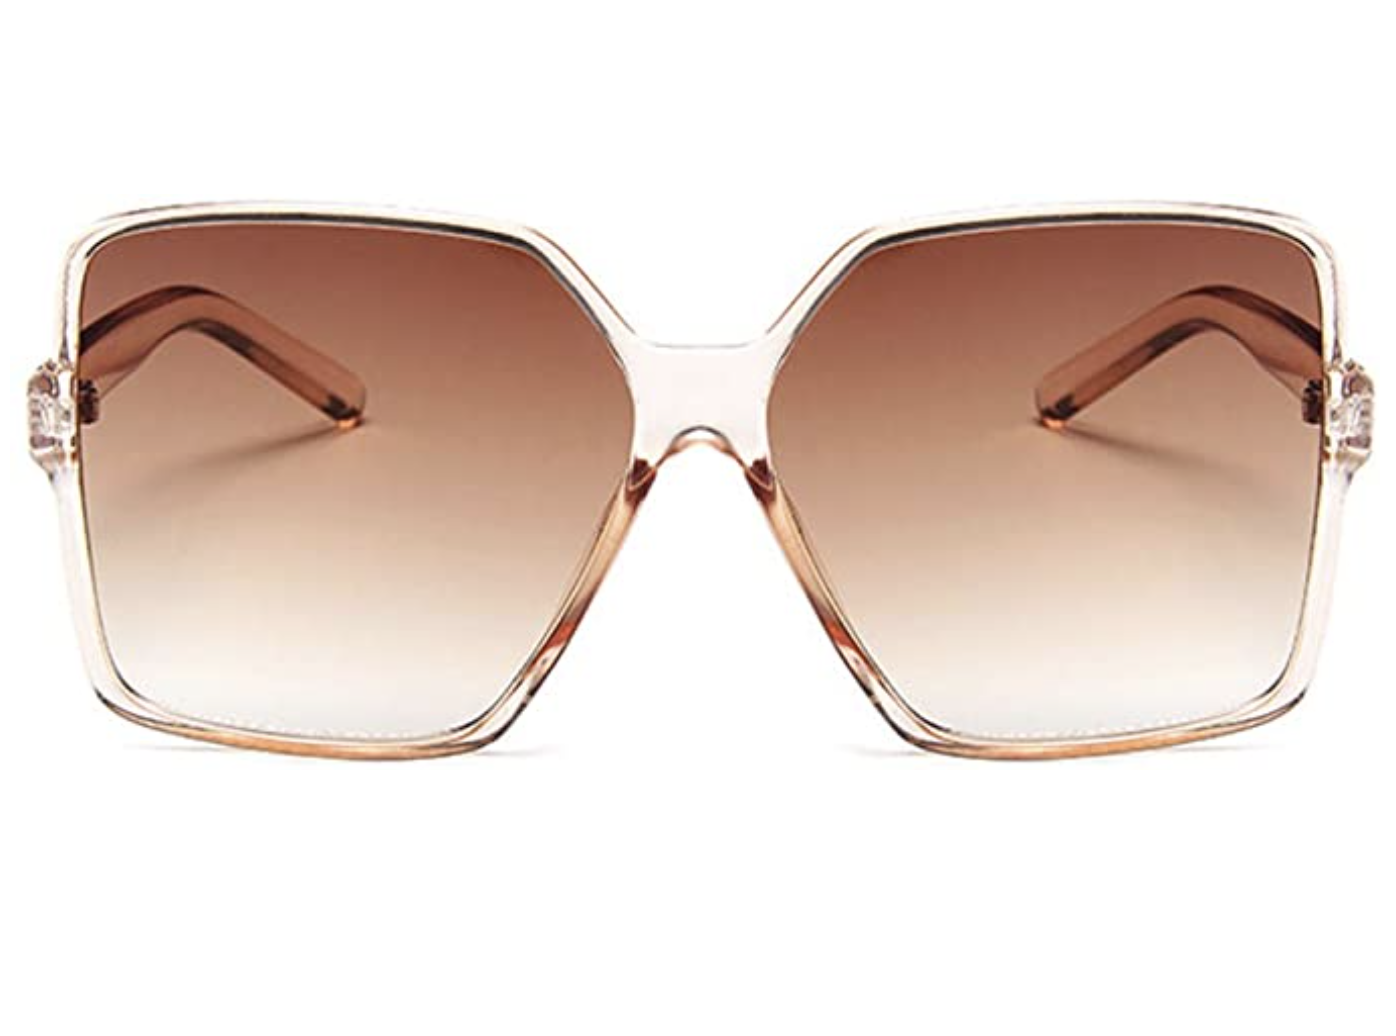 Dollger UV400 Polycarbonate Lens Square Oversized Sunglasses